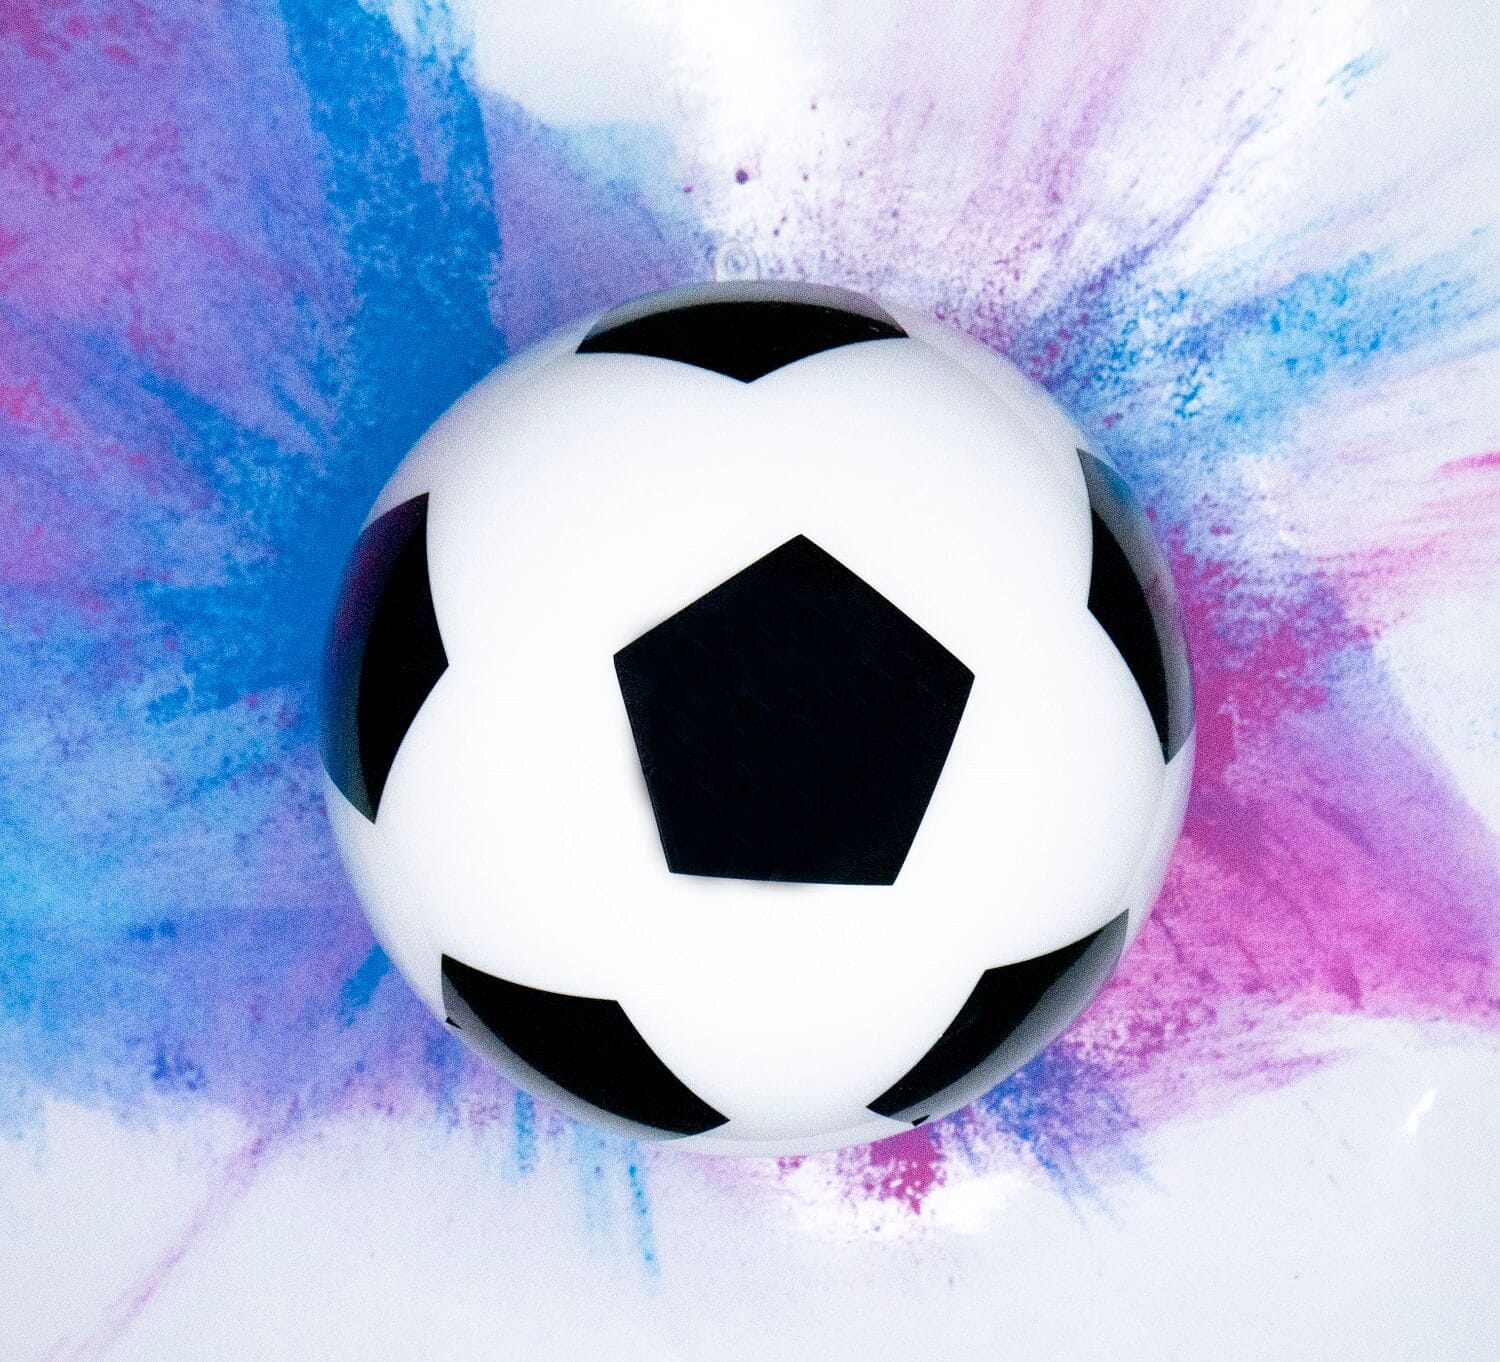 Revelación de género de balón de fútbol, revelación de género, ideas de  revelación de género -  México